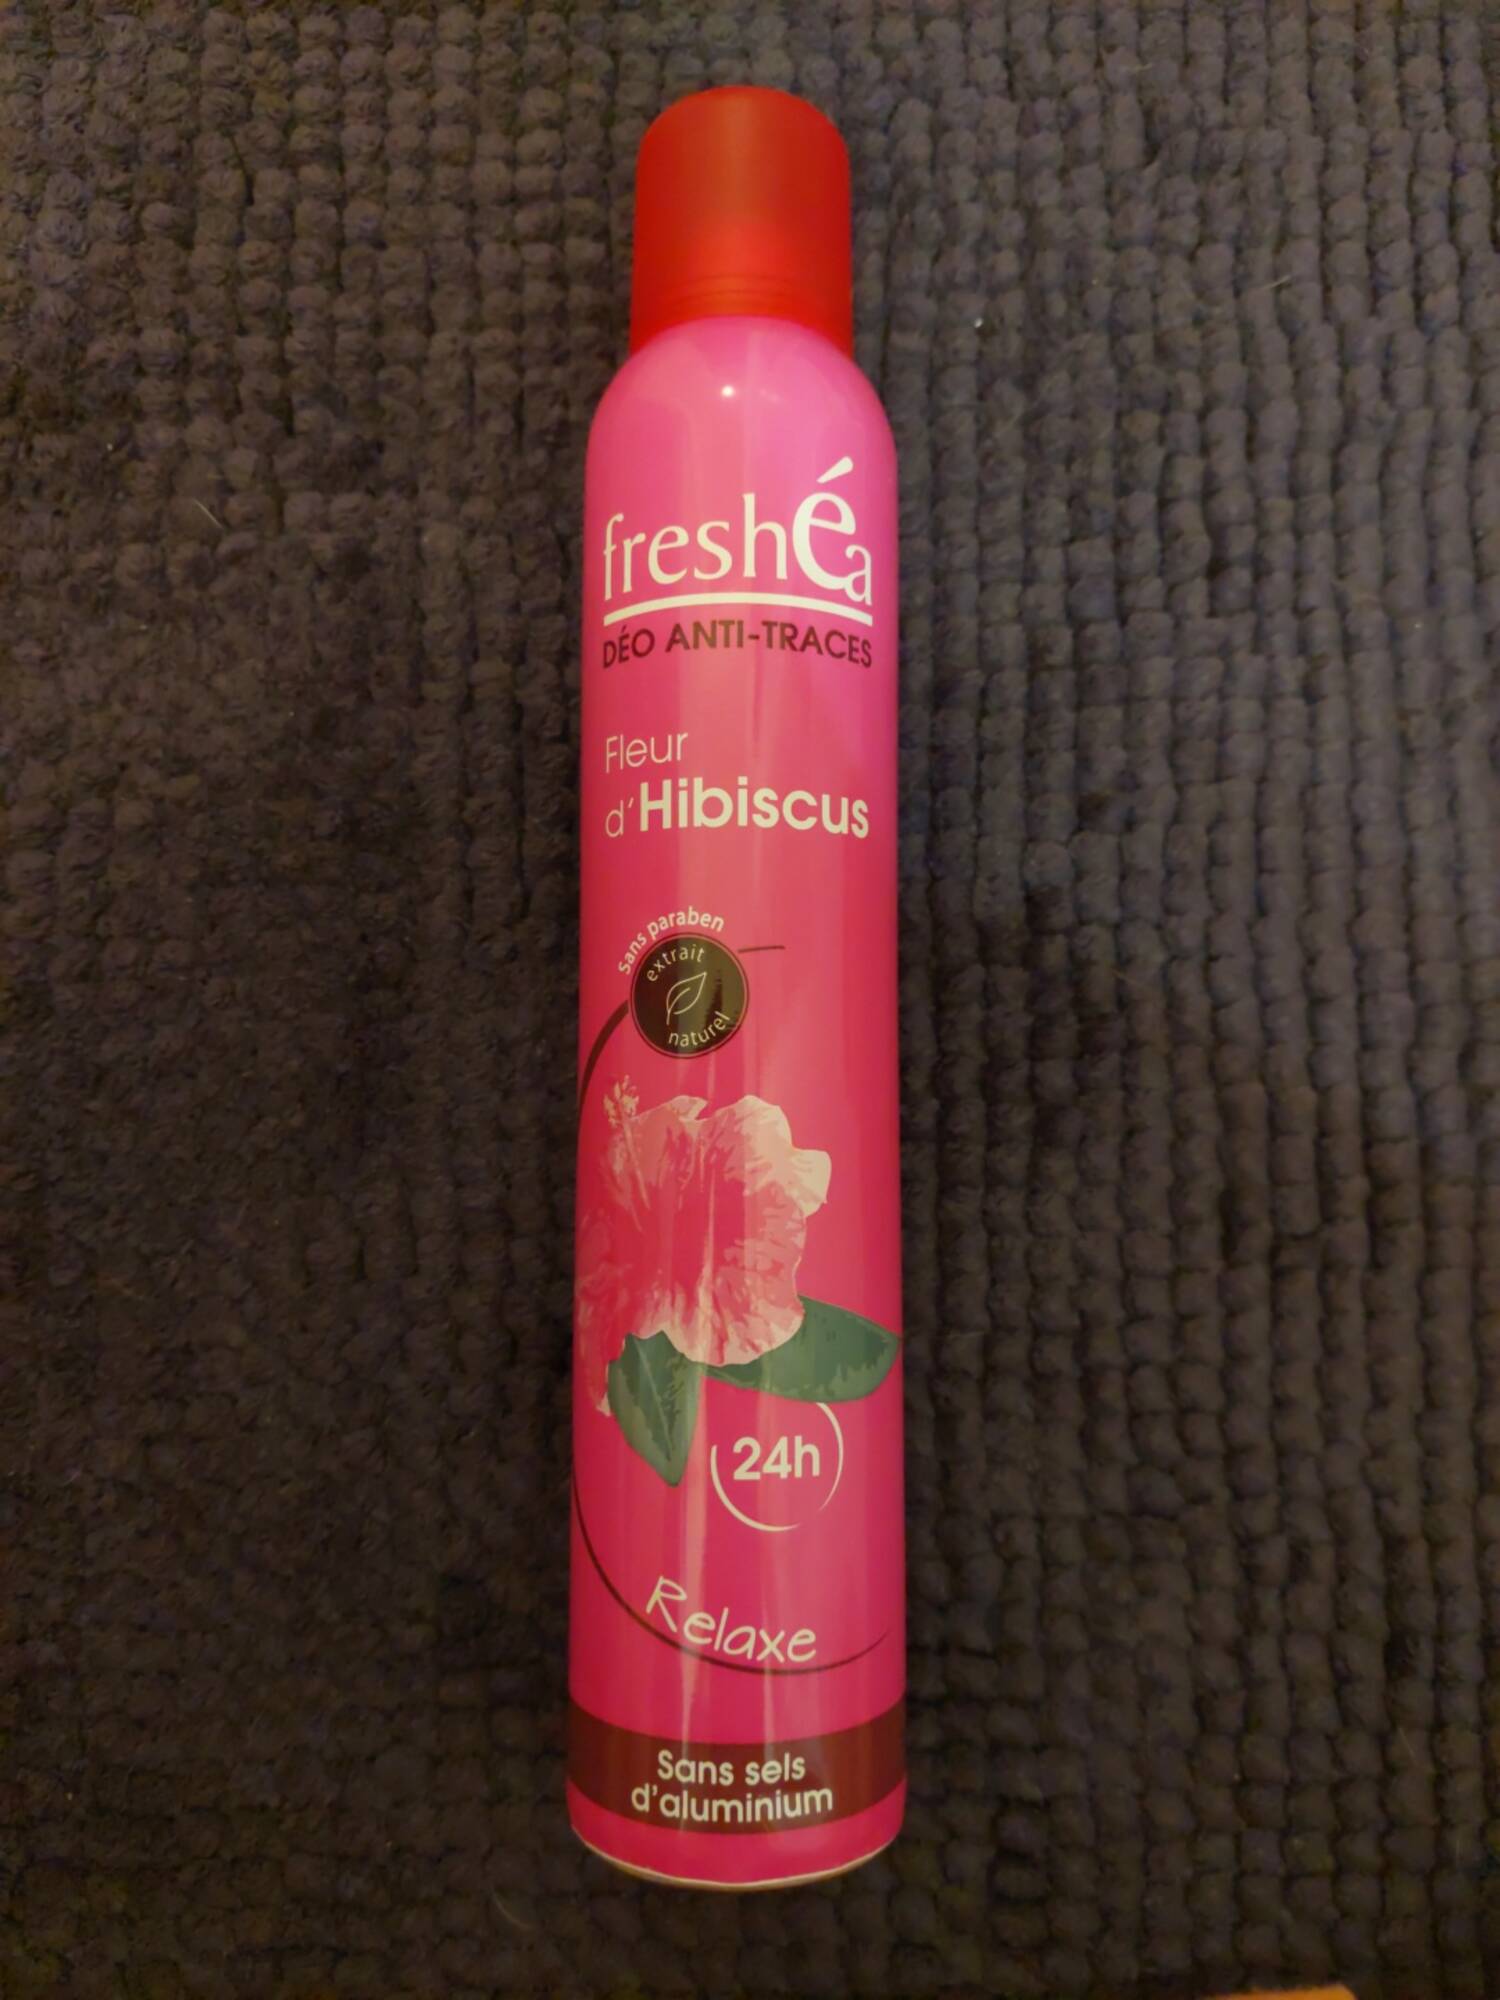 FRESHÉA - Déo anti-traces fleur d'hibiscus 24h